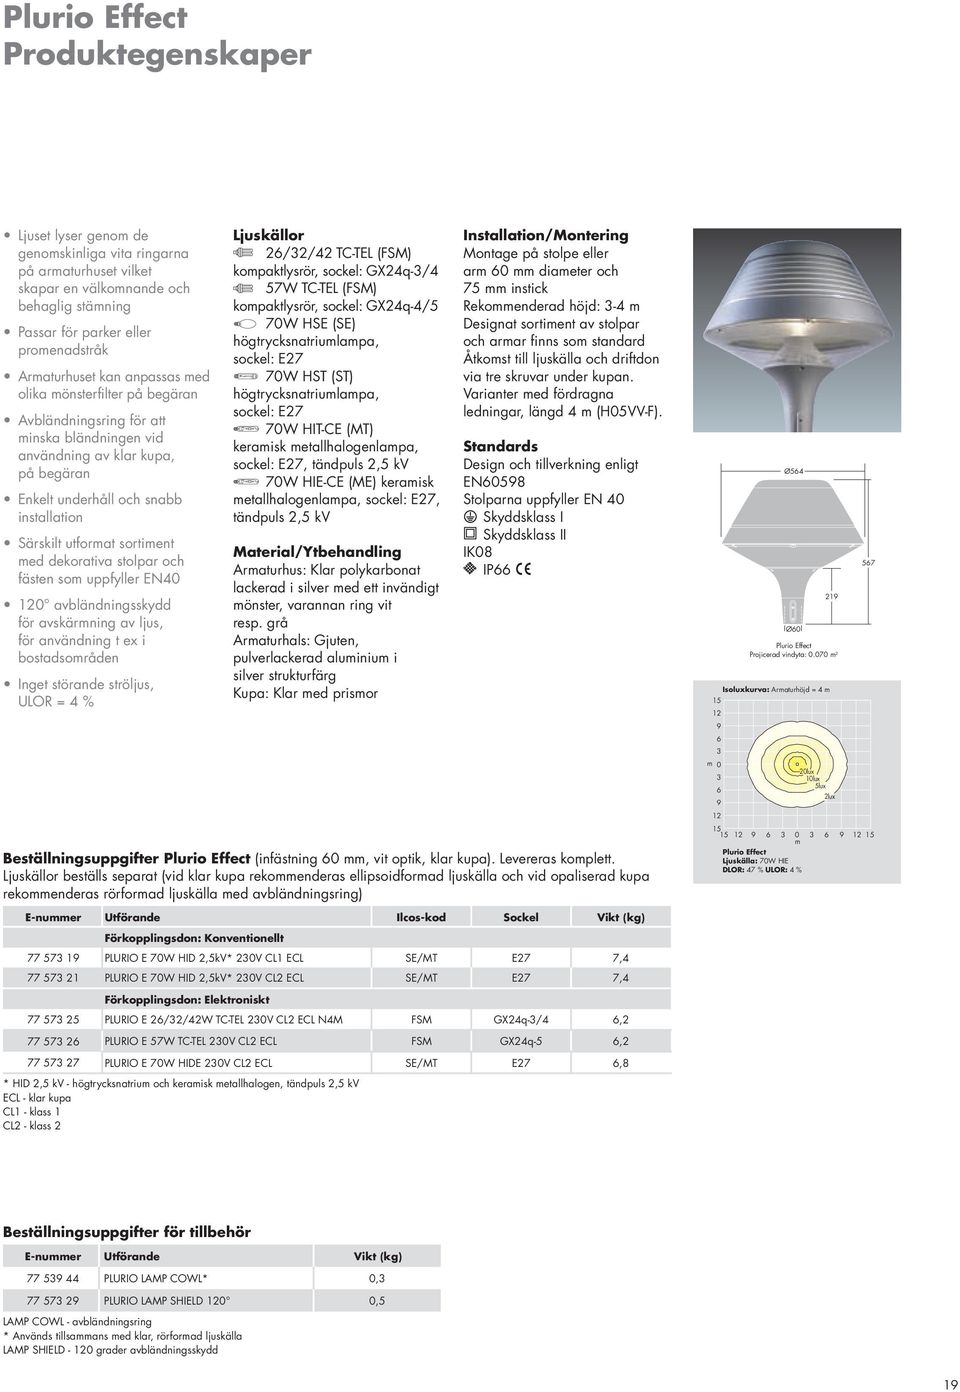 med dekorativa stolpar och fästen som uppfyller EN40 120 avbländningsskydd för avskärmning av ljus, för användning t ex i bostadsområden Inget störande ströljus, ULOR = 4 % Ljuskällor 2/2/42 TC-TEL